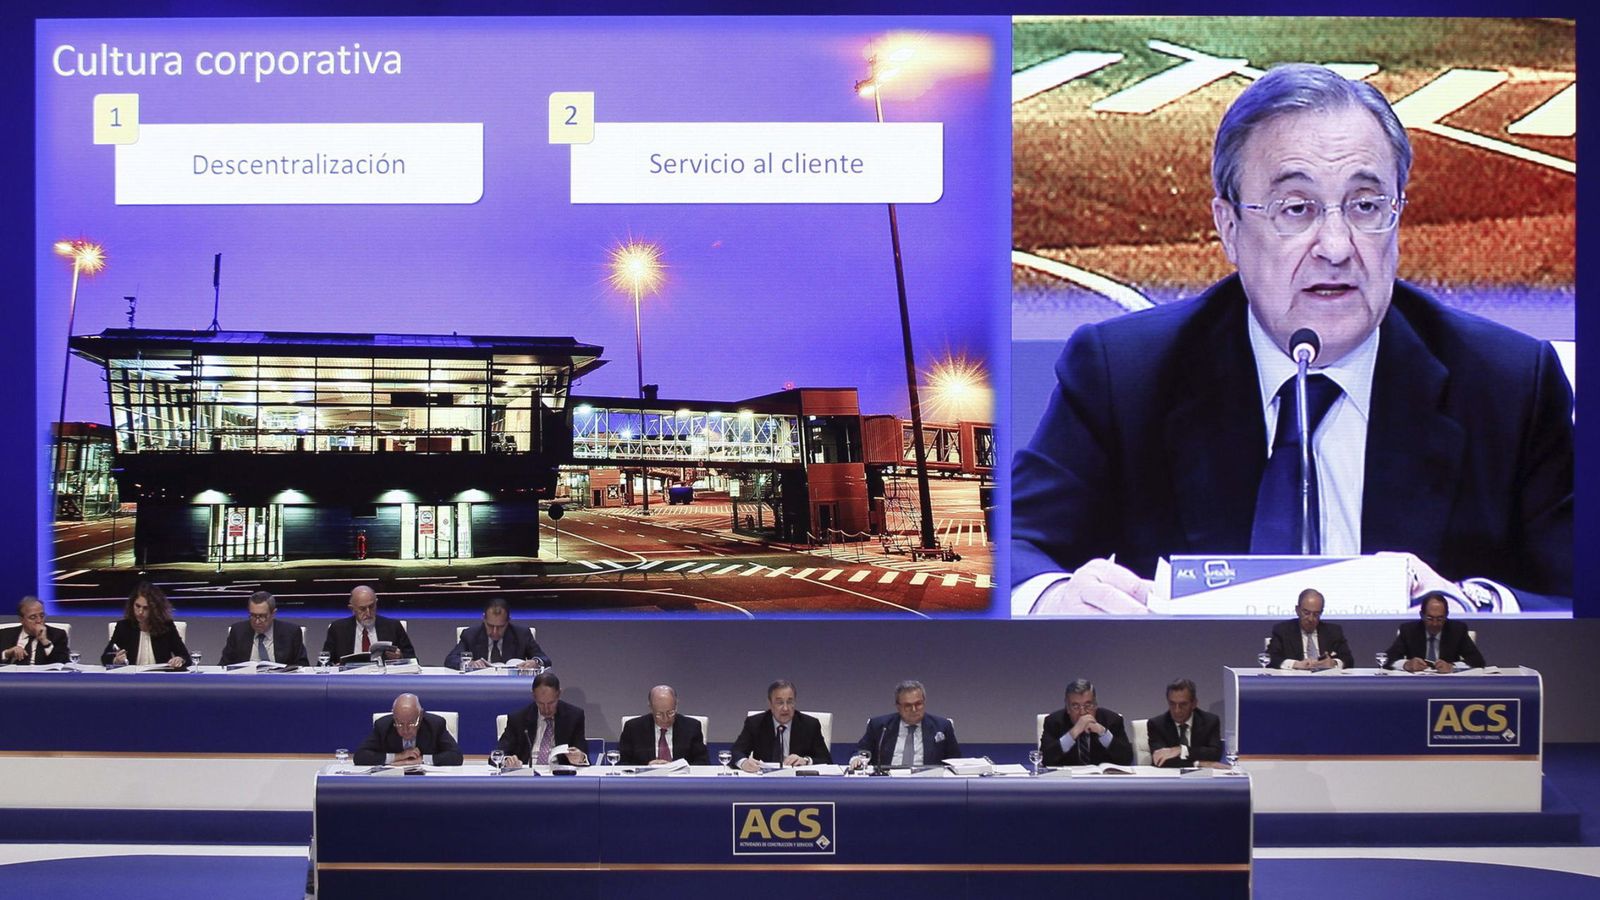 Foto: El presidente del grupo ACS, Florentino Pérez, durante una asamblea de la constructora. (EFE)